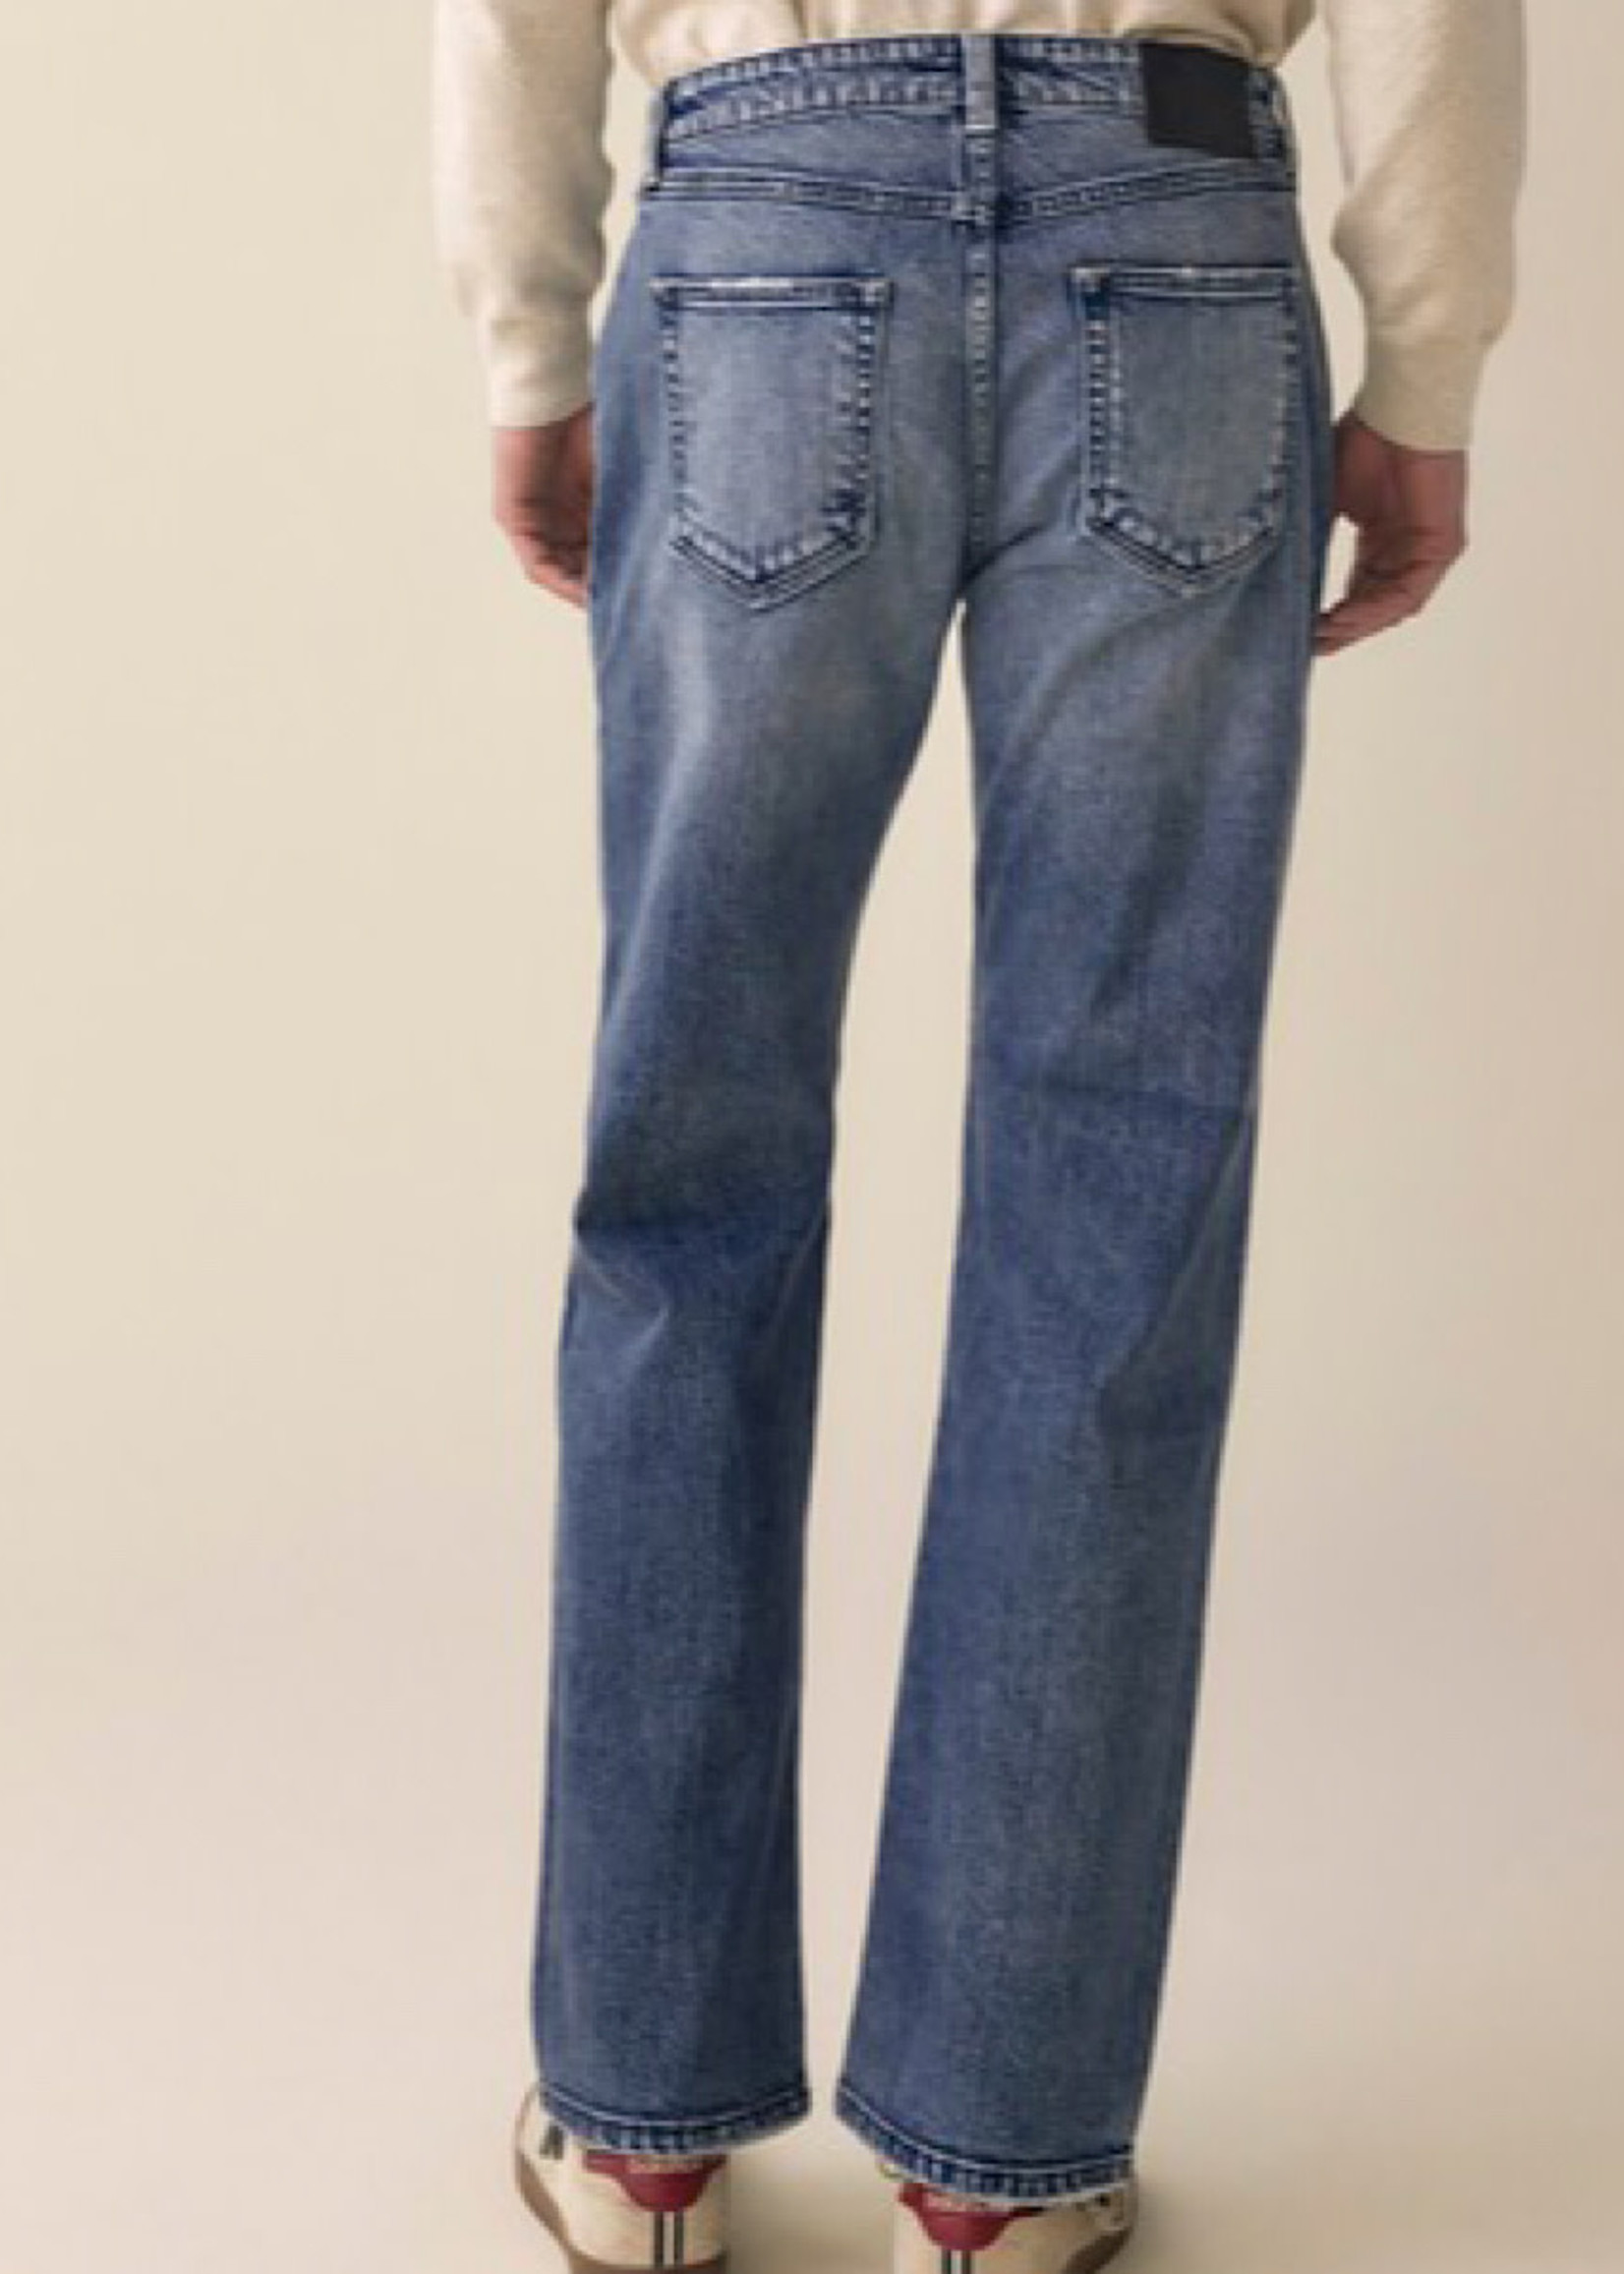 KanCan KanCan Men's Straight Jeans KM1022M